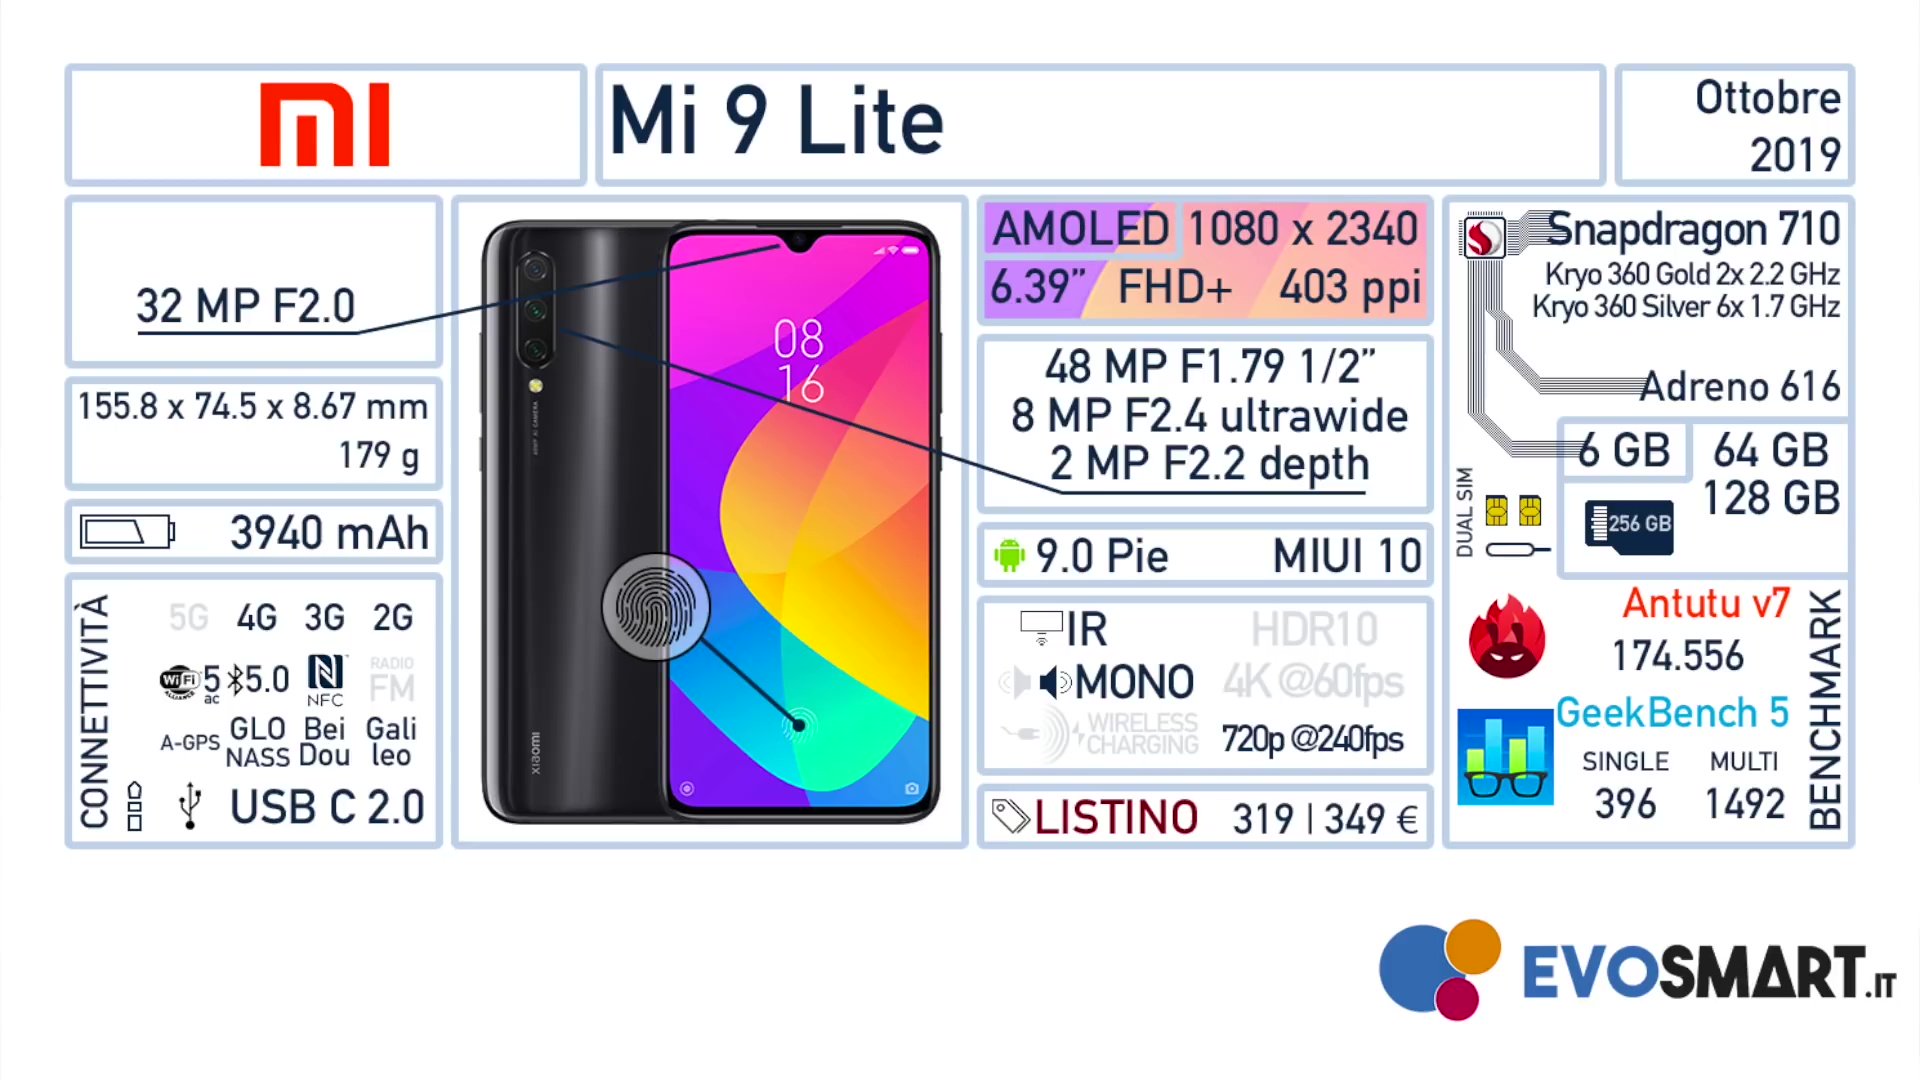 Tấm kỹ thuật Xiaomi Mi 9 Lite